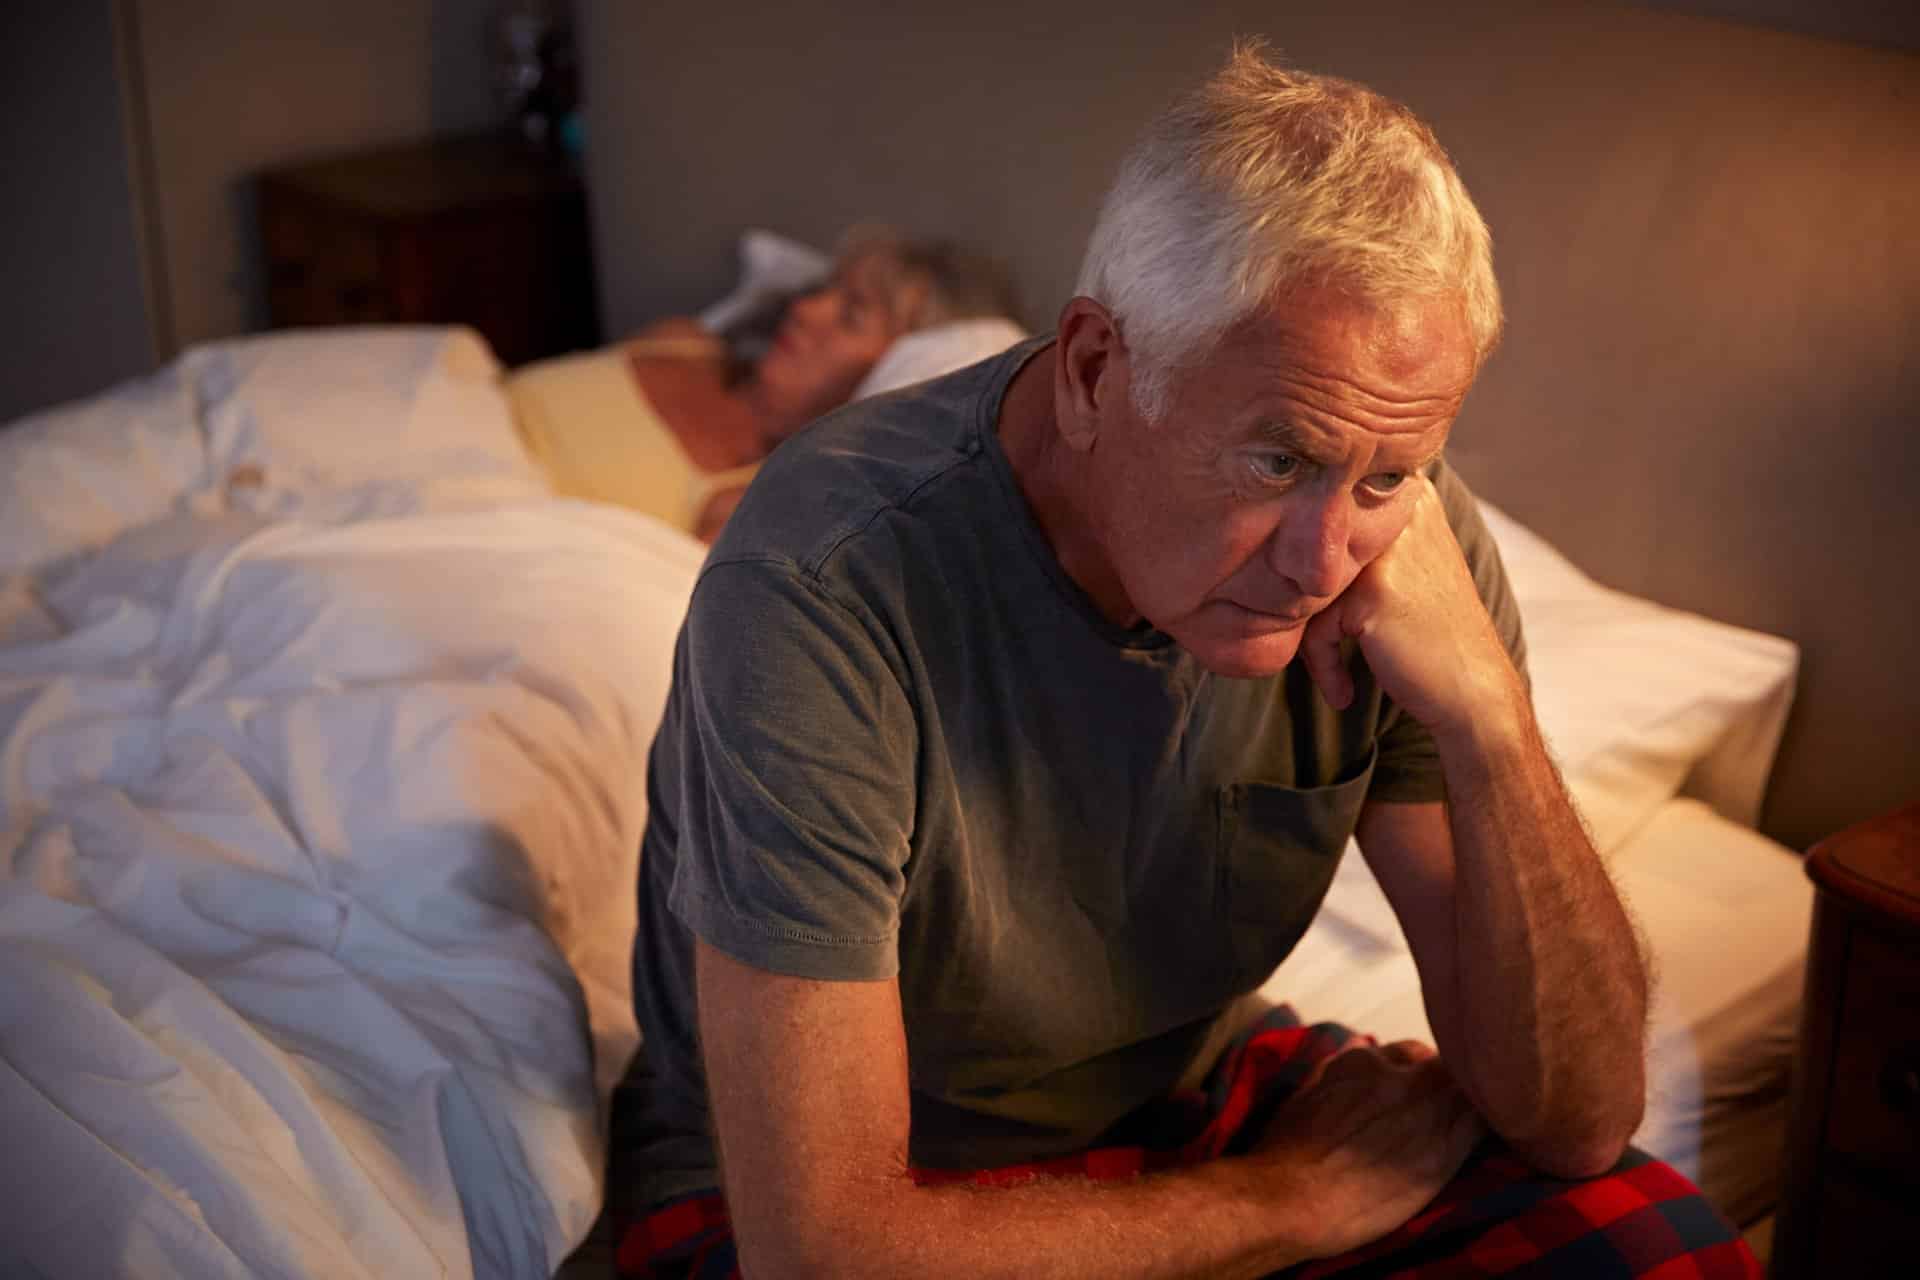 Les personnes âgées qui dorment avec la lumière risquent ces problèmes de santé shutterstock 738100801 scaled